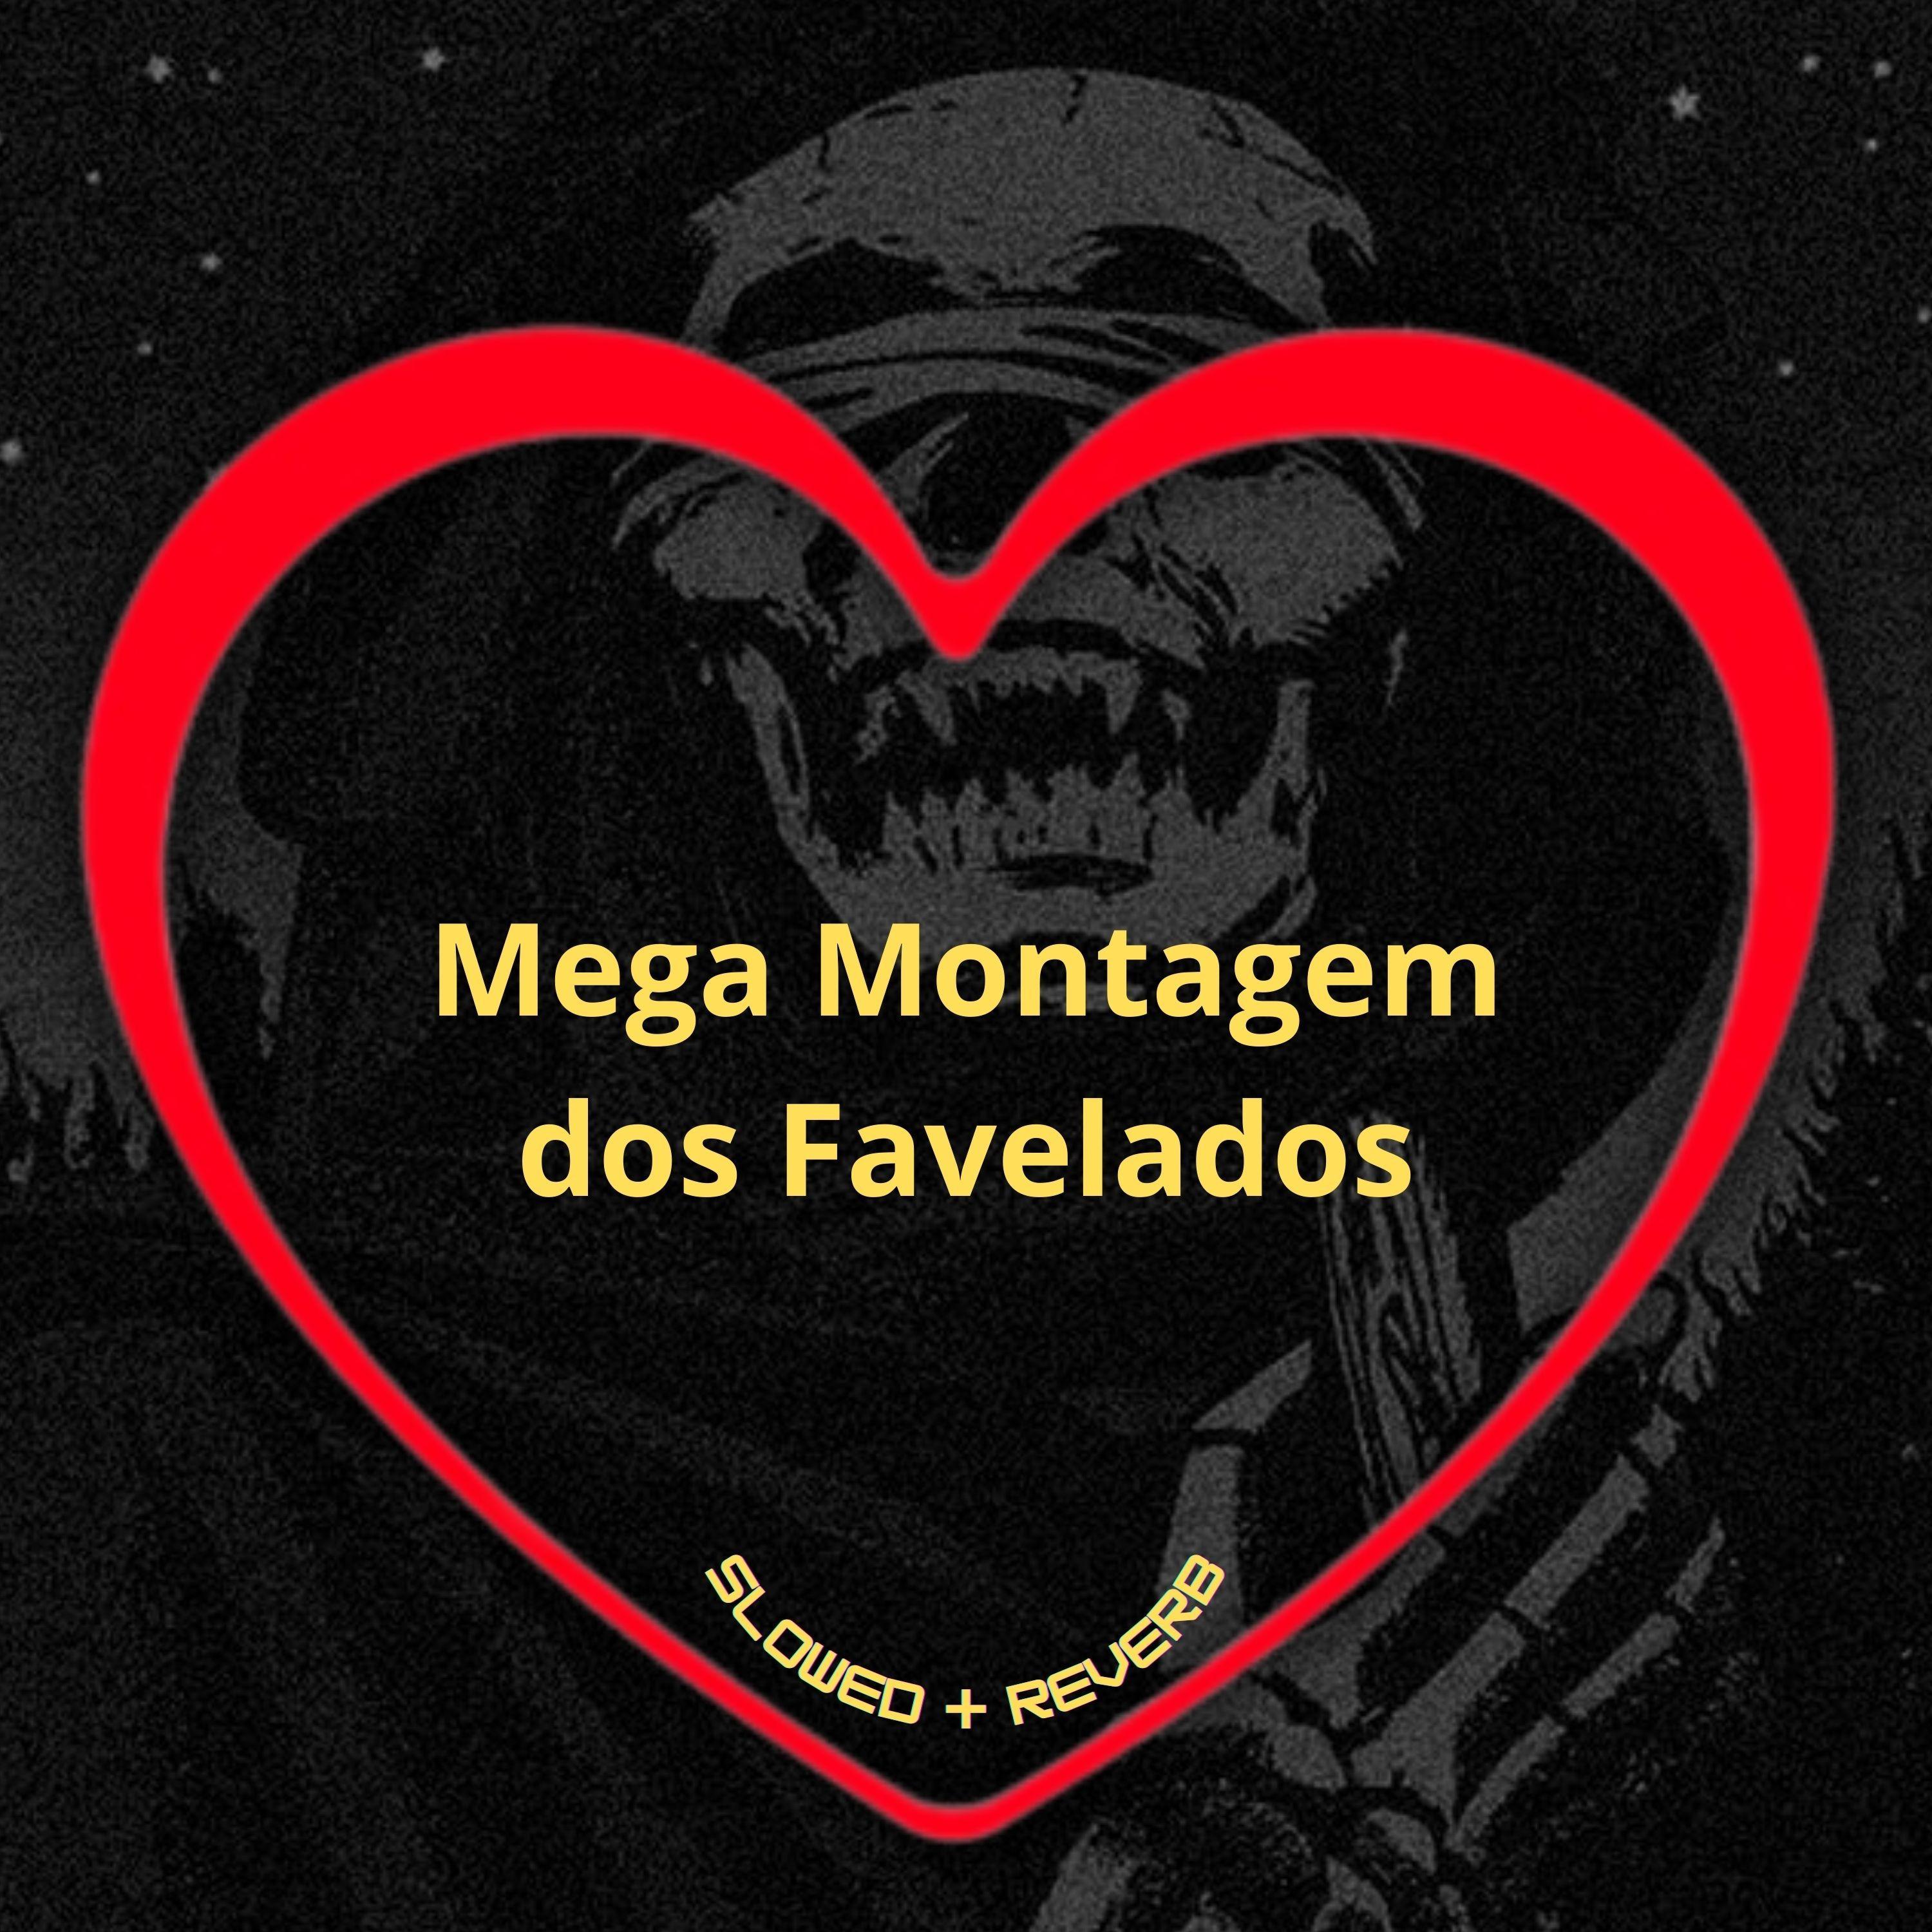 Love Fluxos - Mega Montagem dos Favelados (Slowed + Reverb)